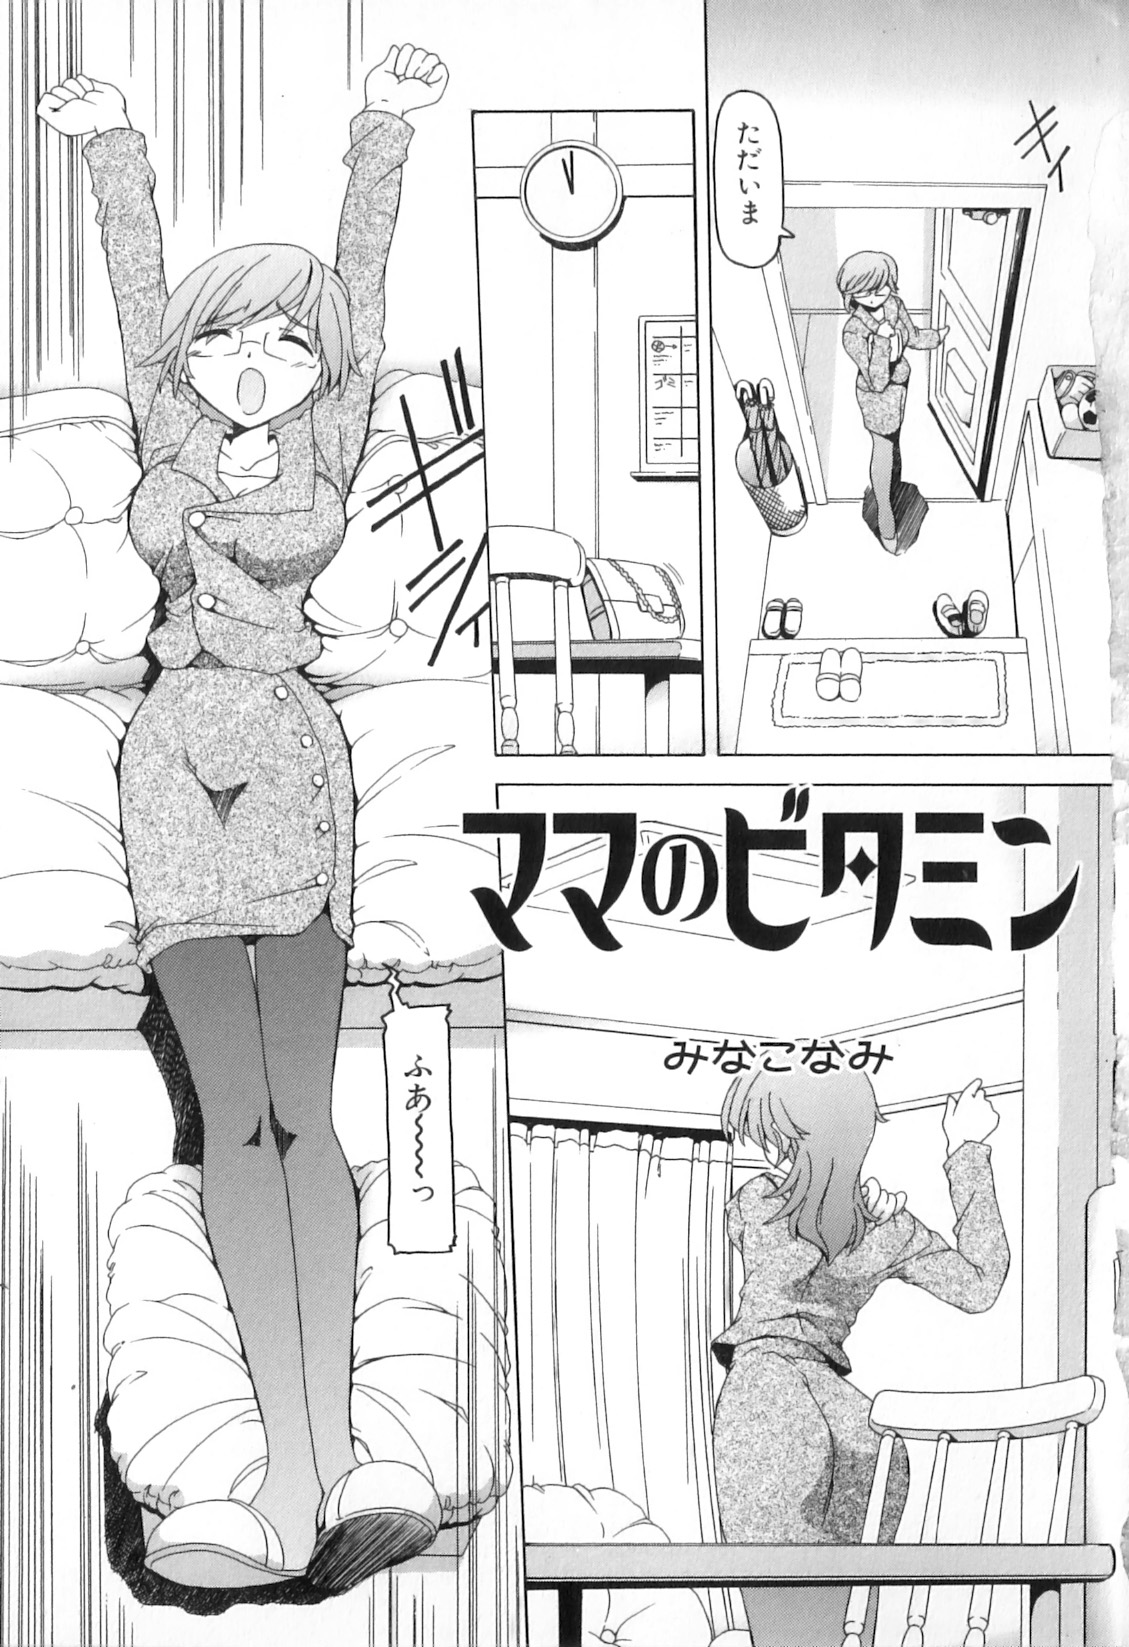 [Anthology] Boshi Chijou Kitan 2 page 7 full